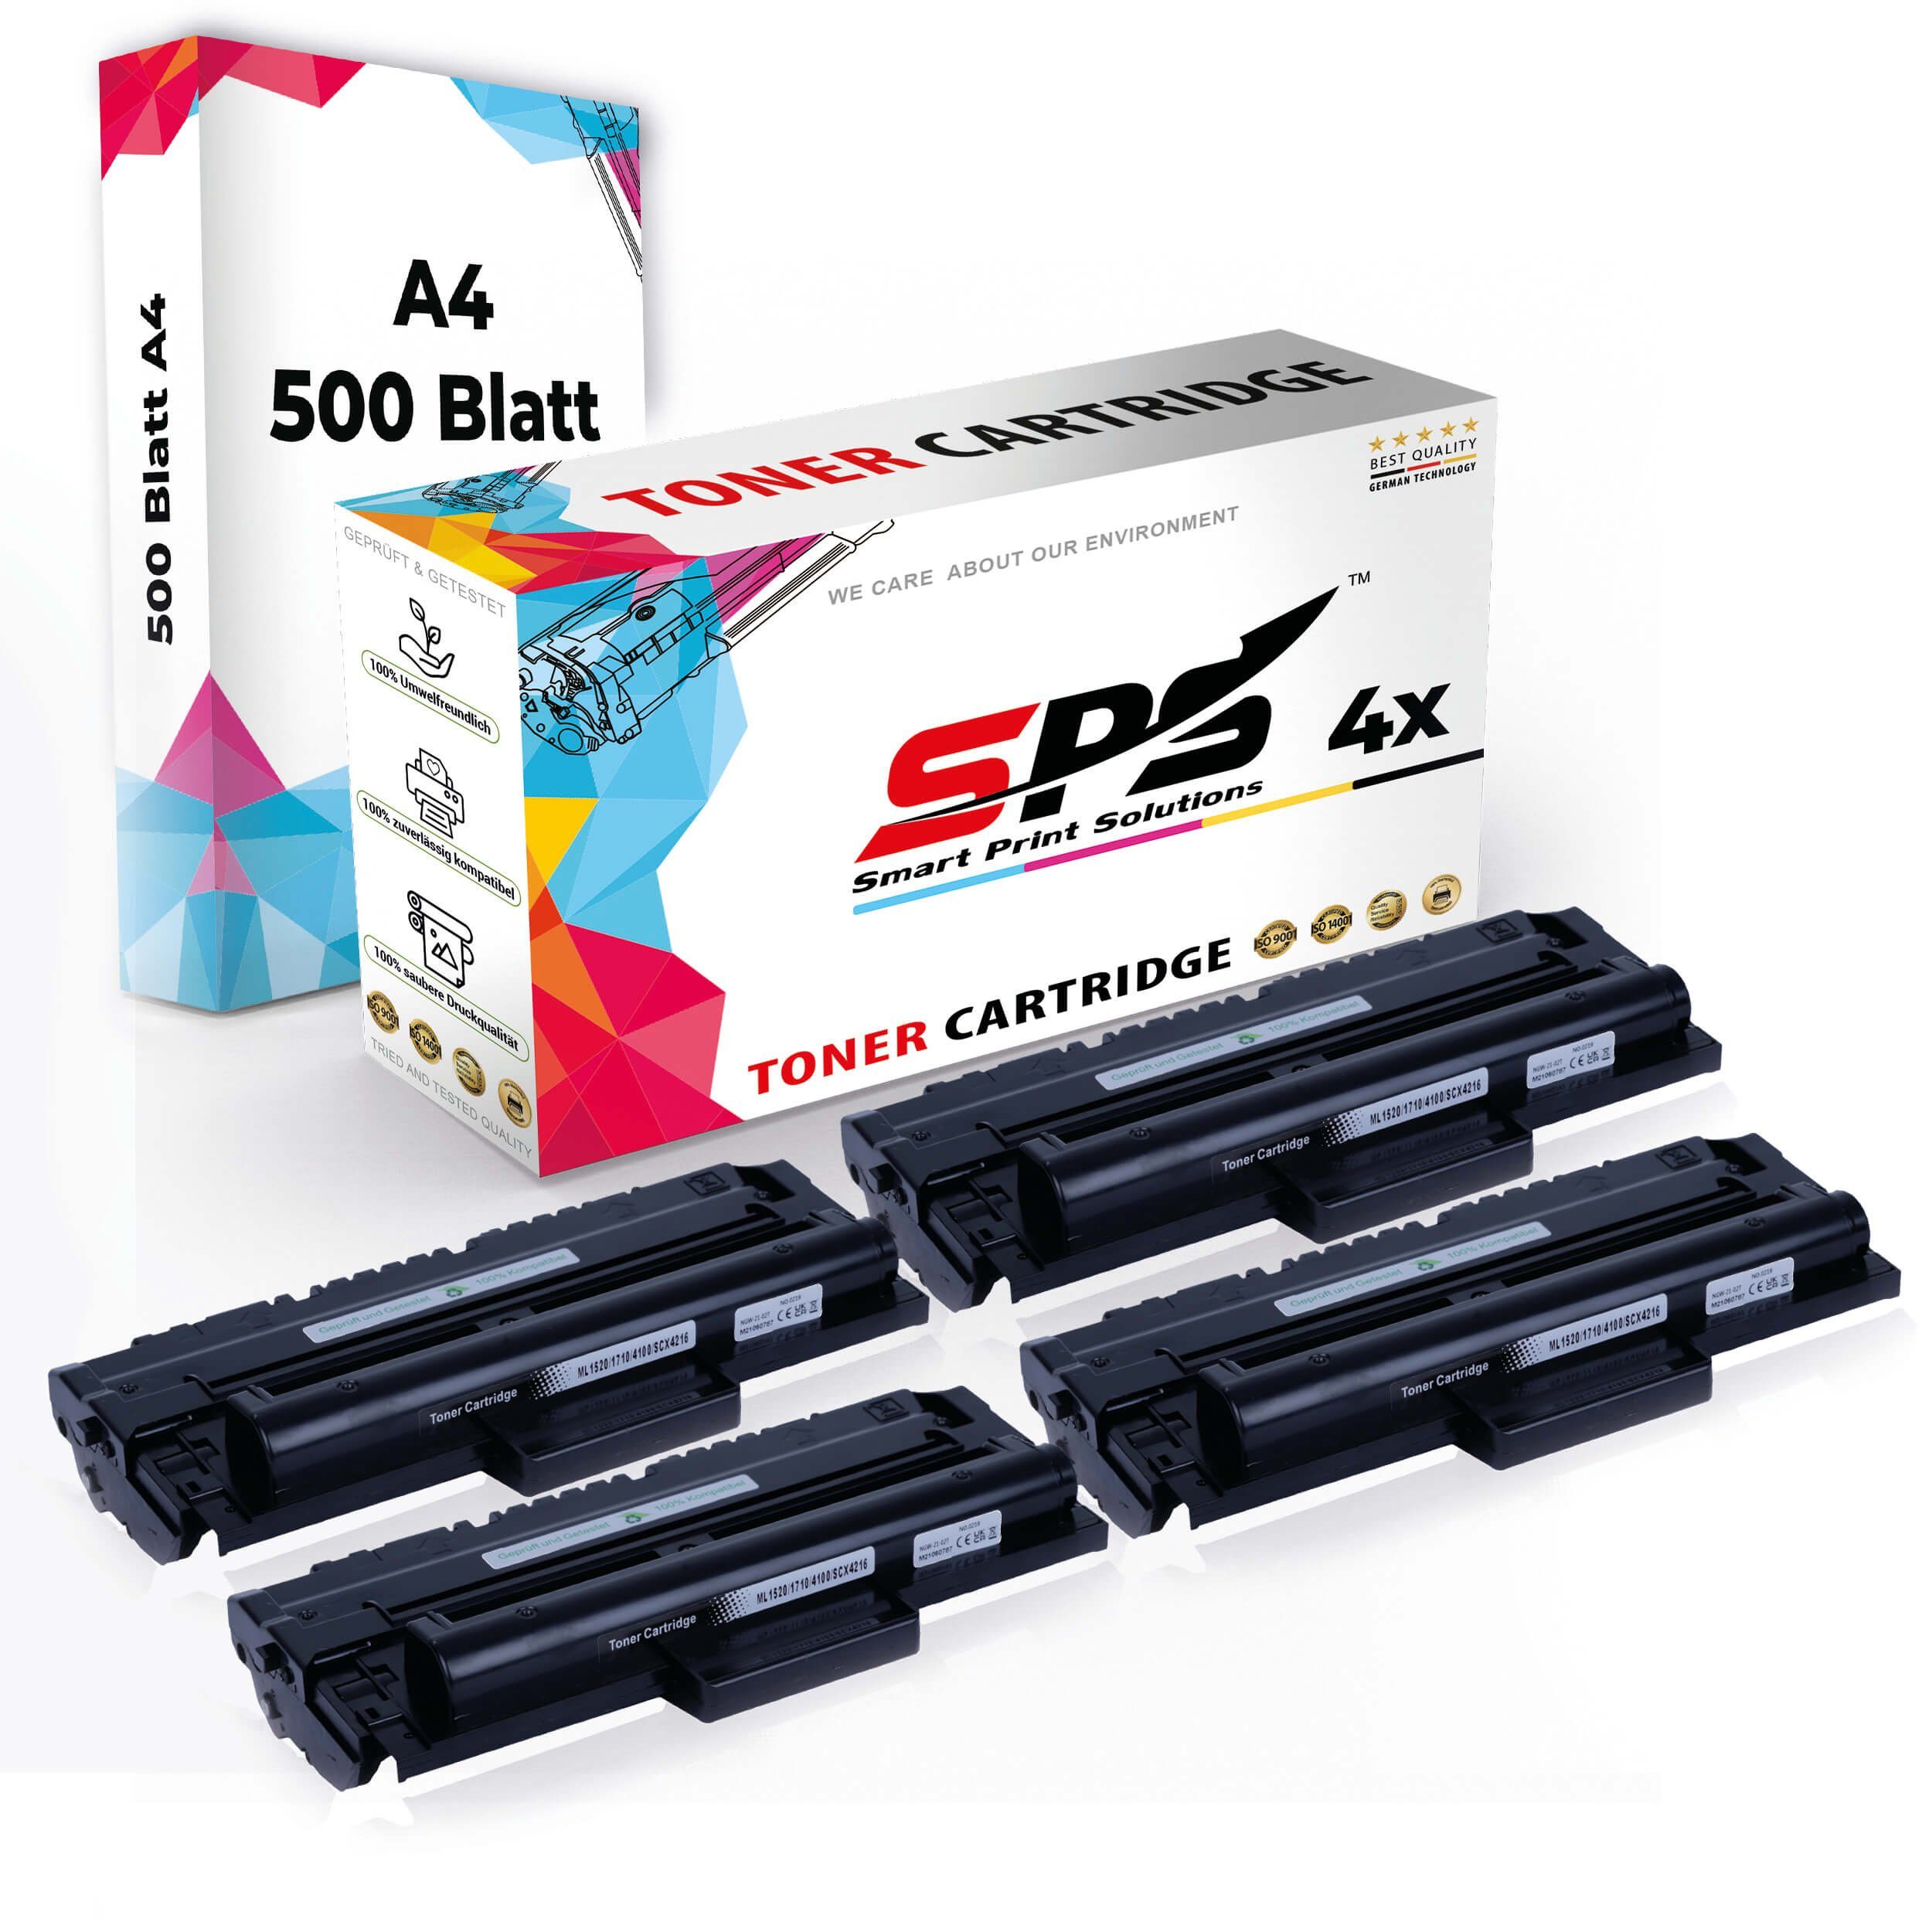 Kompatibel, 4x (4er Set A4 Multipack 4x Druckerpapier) + A4 Pack, SPS Druckerpapier Tonerkartusche Toner,1x